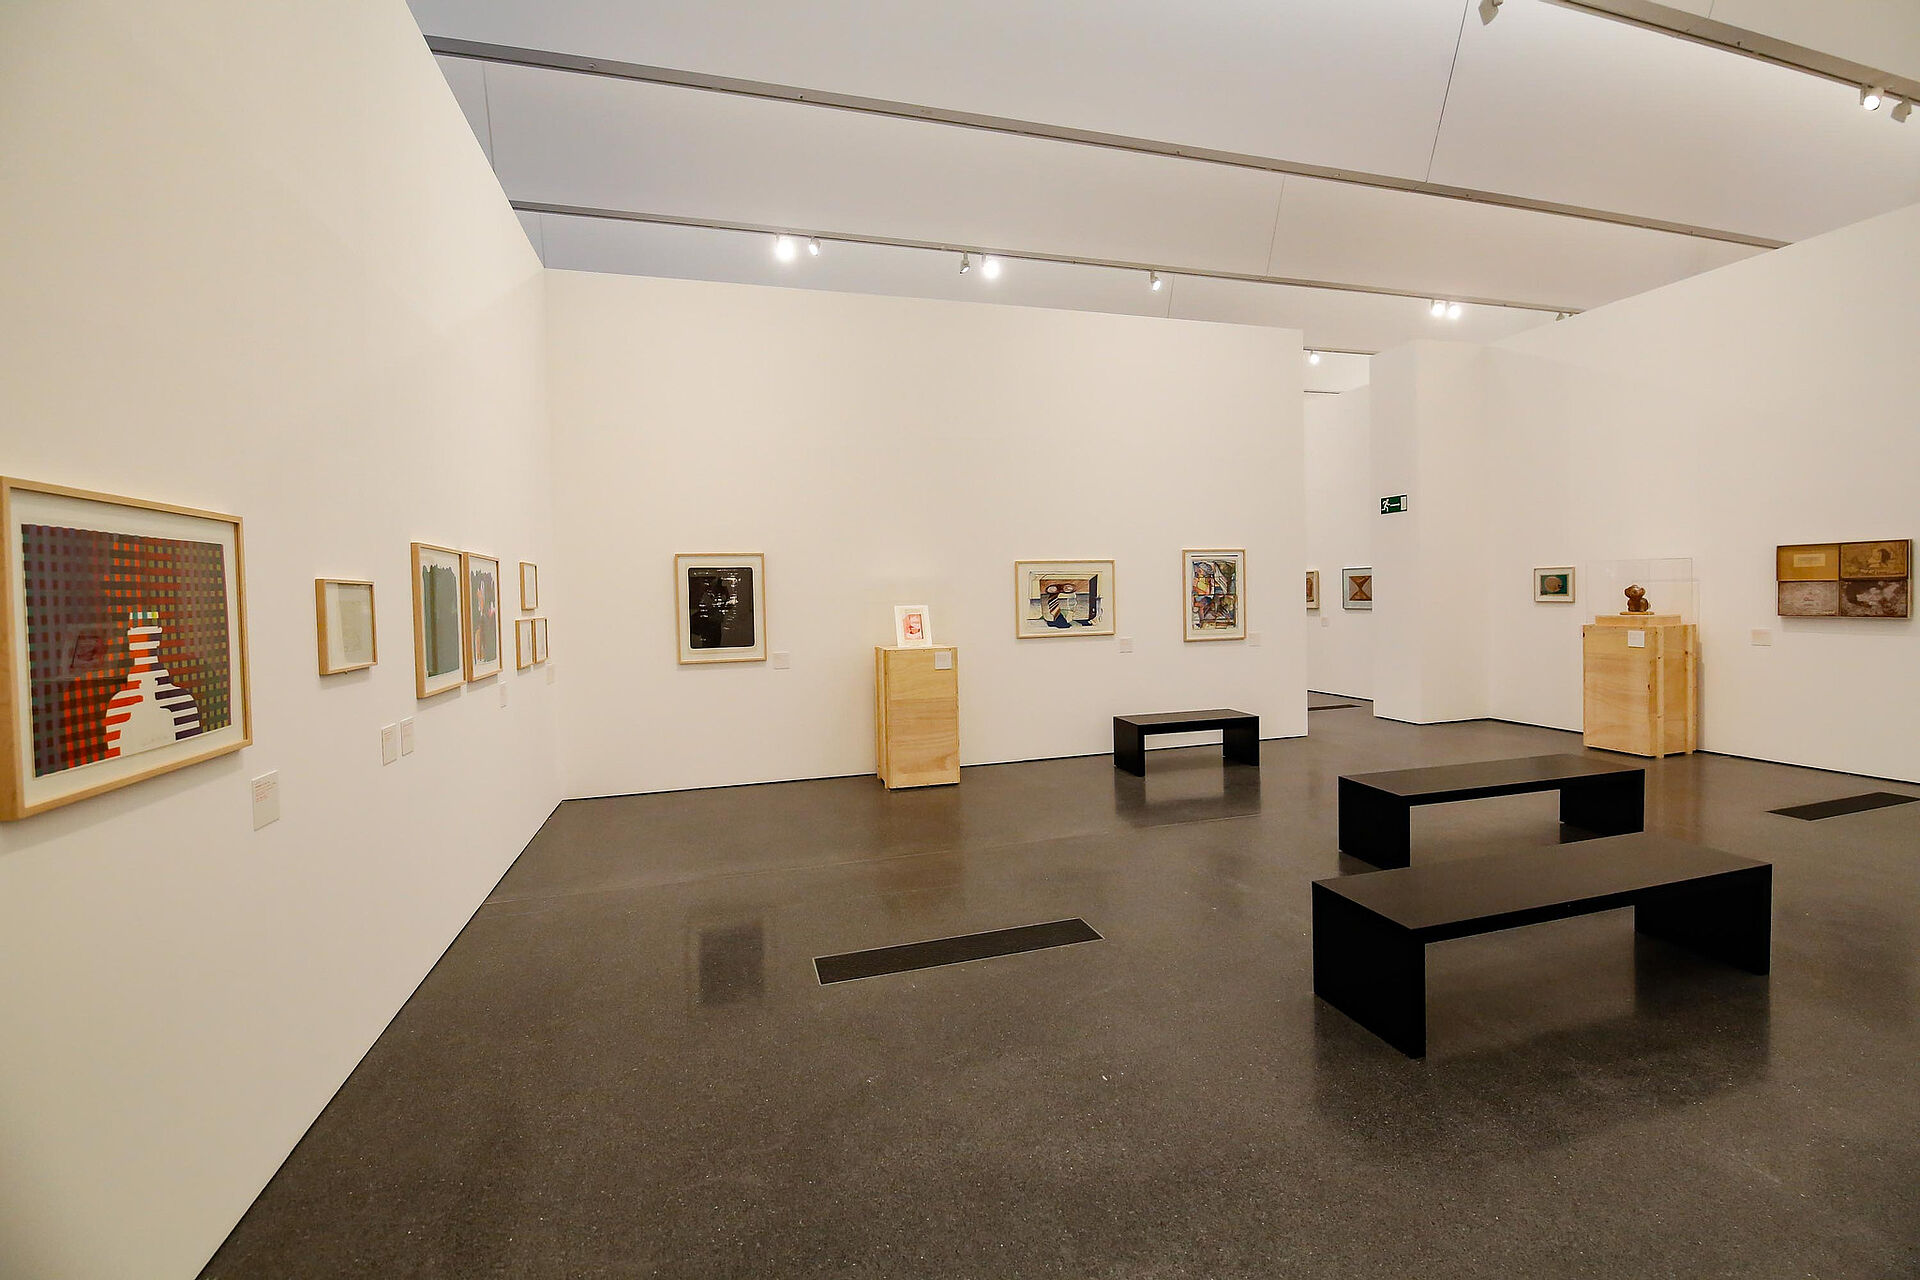 Ausstellungsraum mit wenigen Gemälden, weißen Wänden und drei schlichten schwarzen Bänken in der Mitte des Raumes